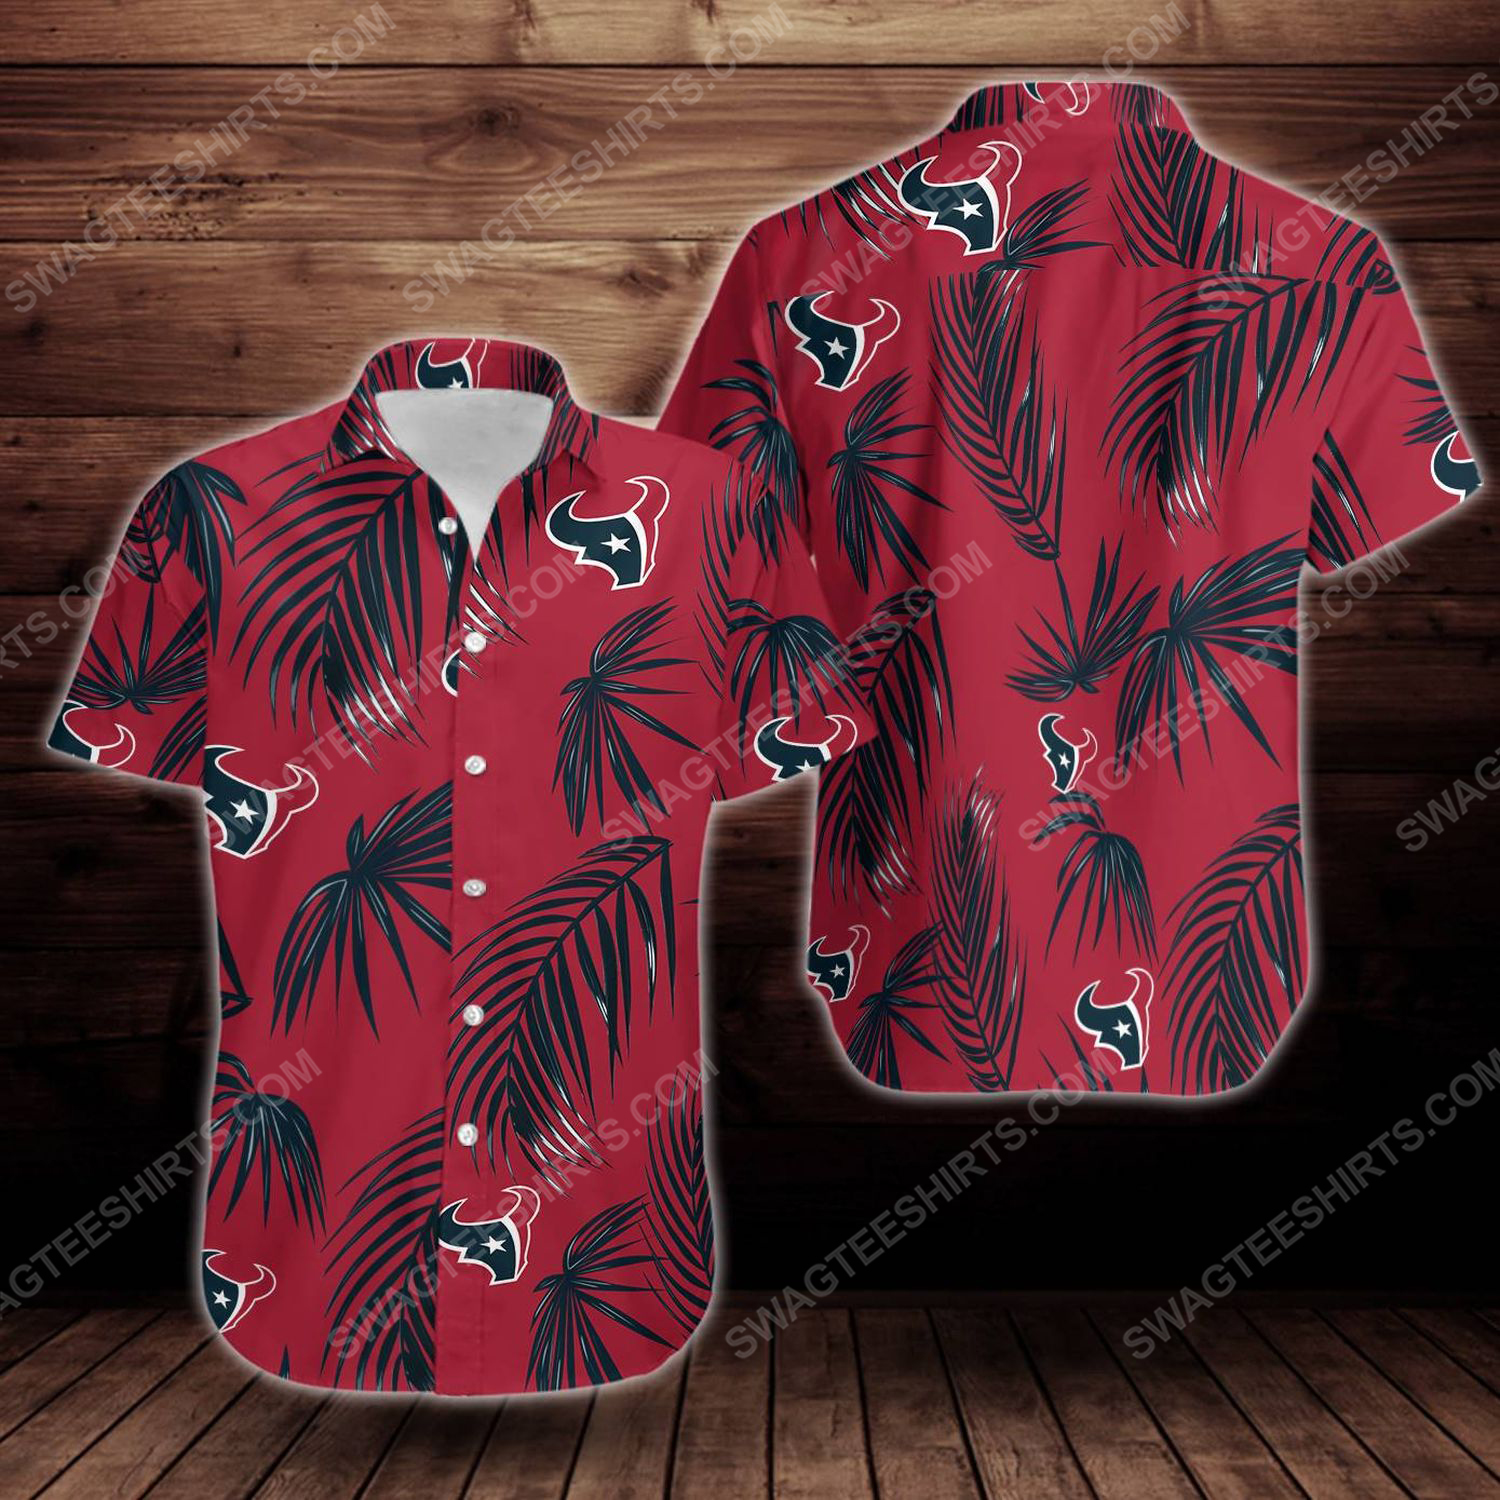 Tropical summer houston texans short sleeve hawaiian shirt 1